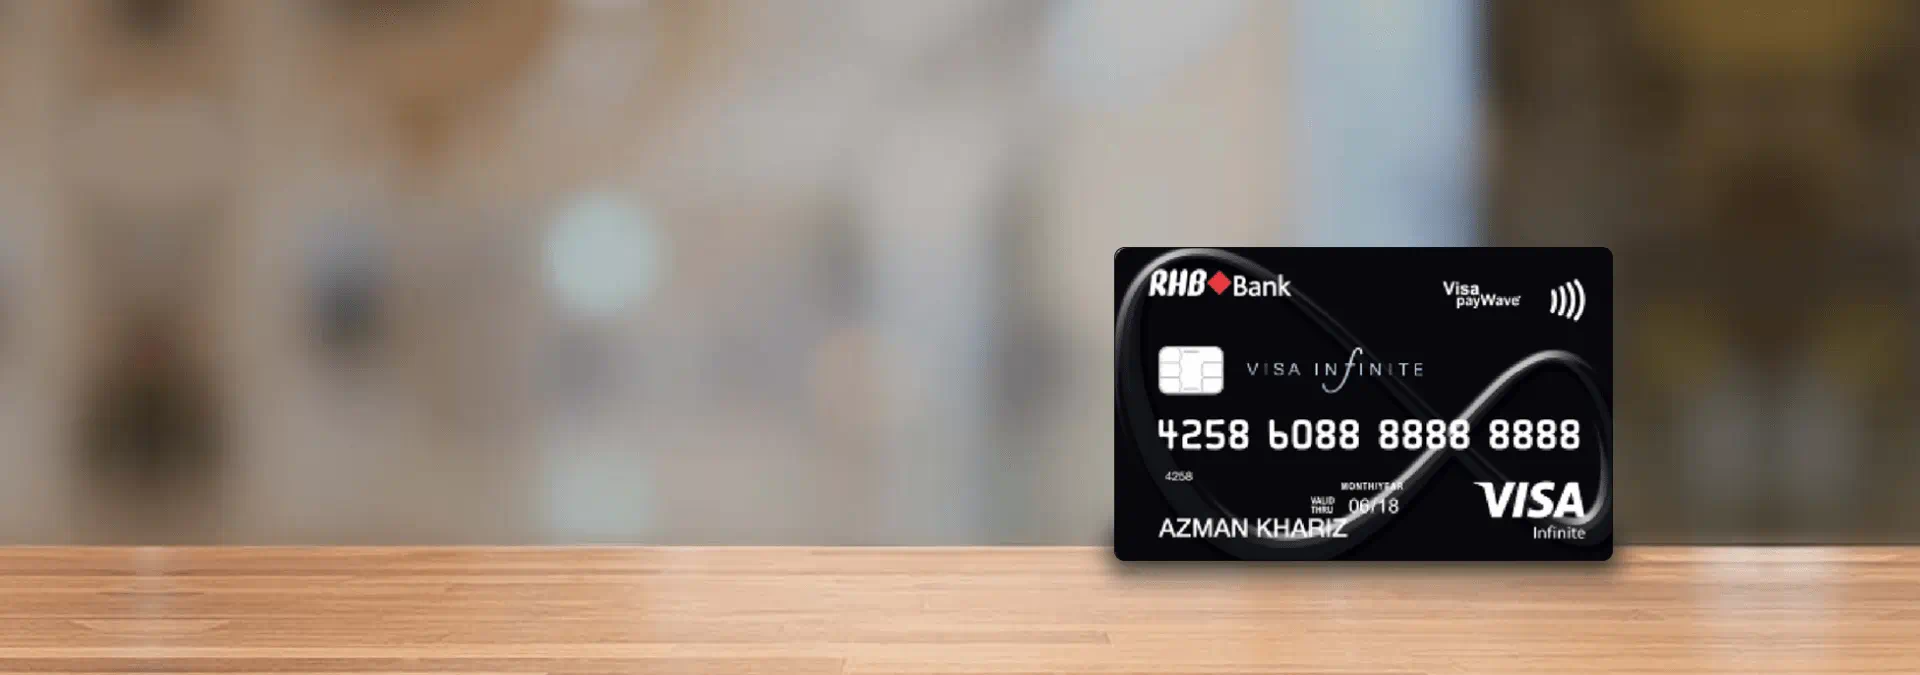 rhb-visa-infinite-credit-card-banner